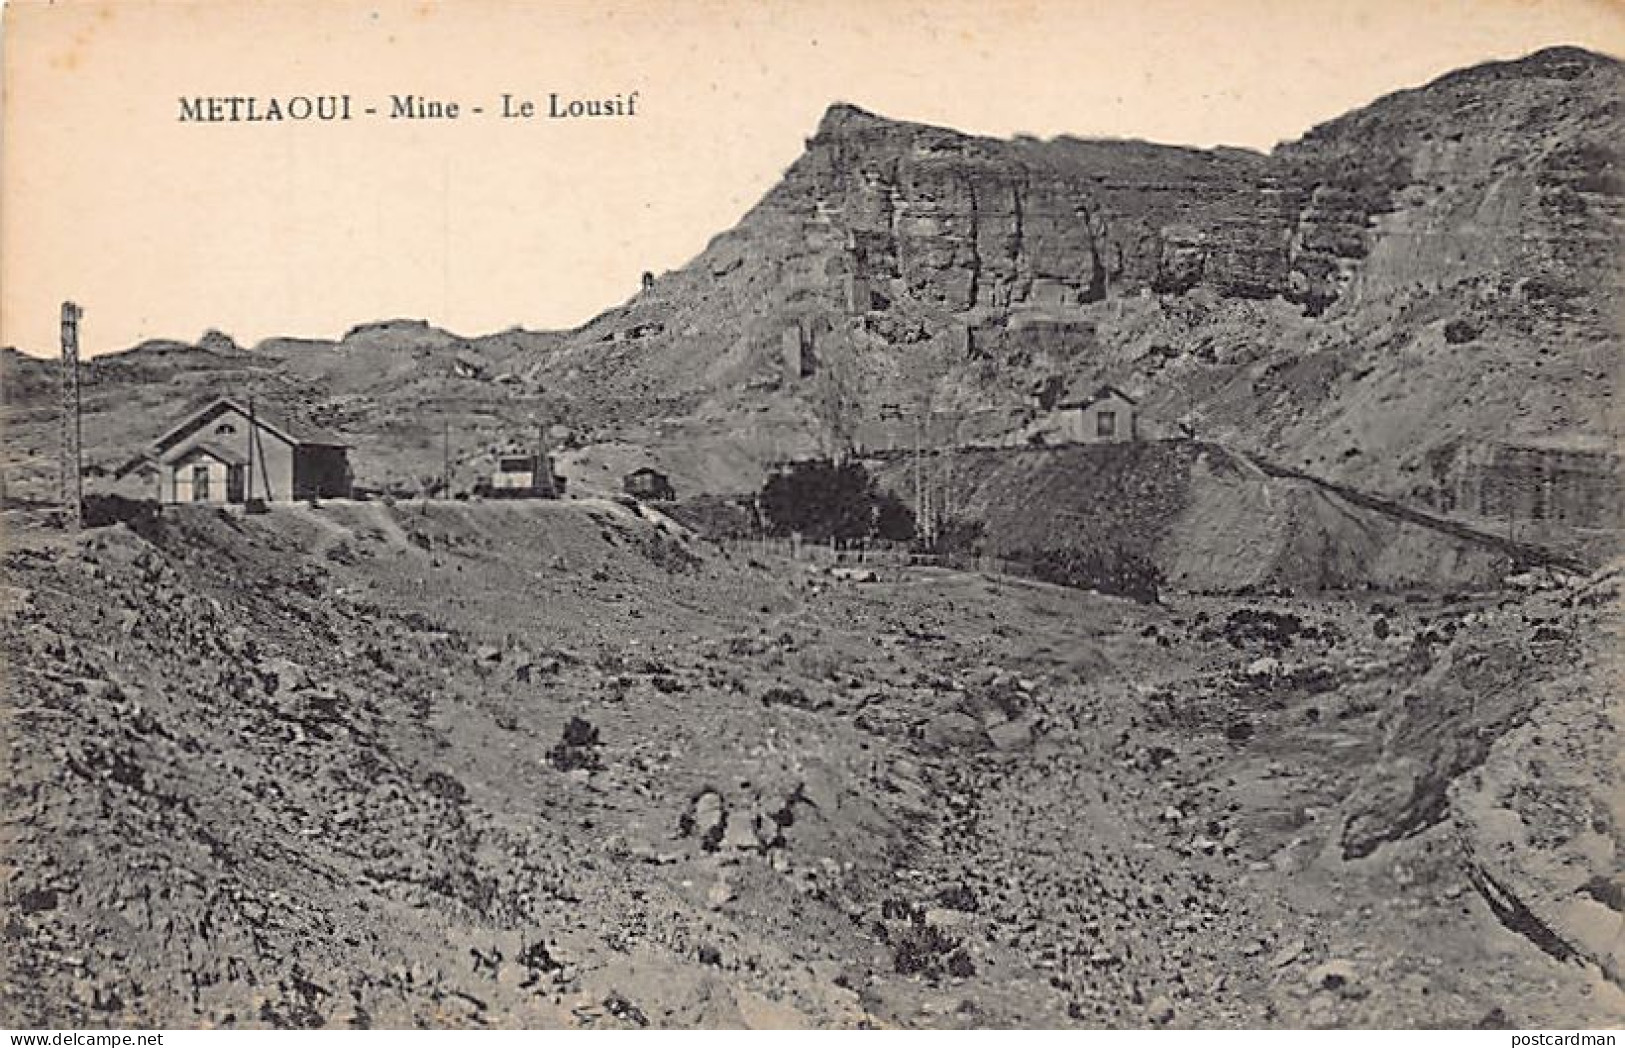 METLAOUI - Mine, Le Lousif - Tunisia